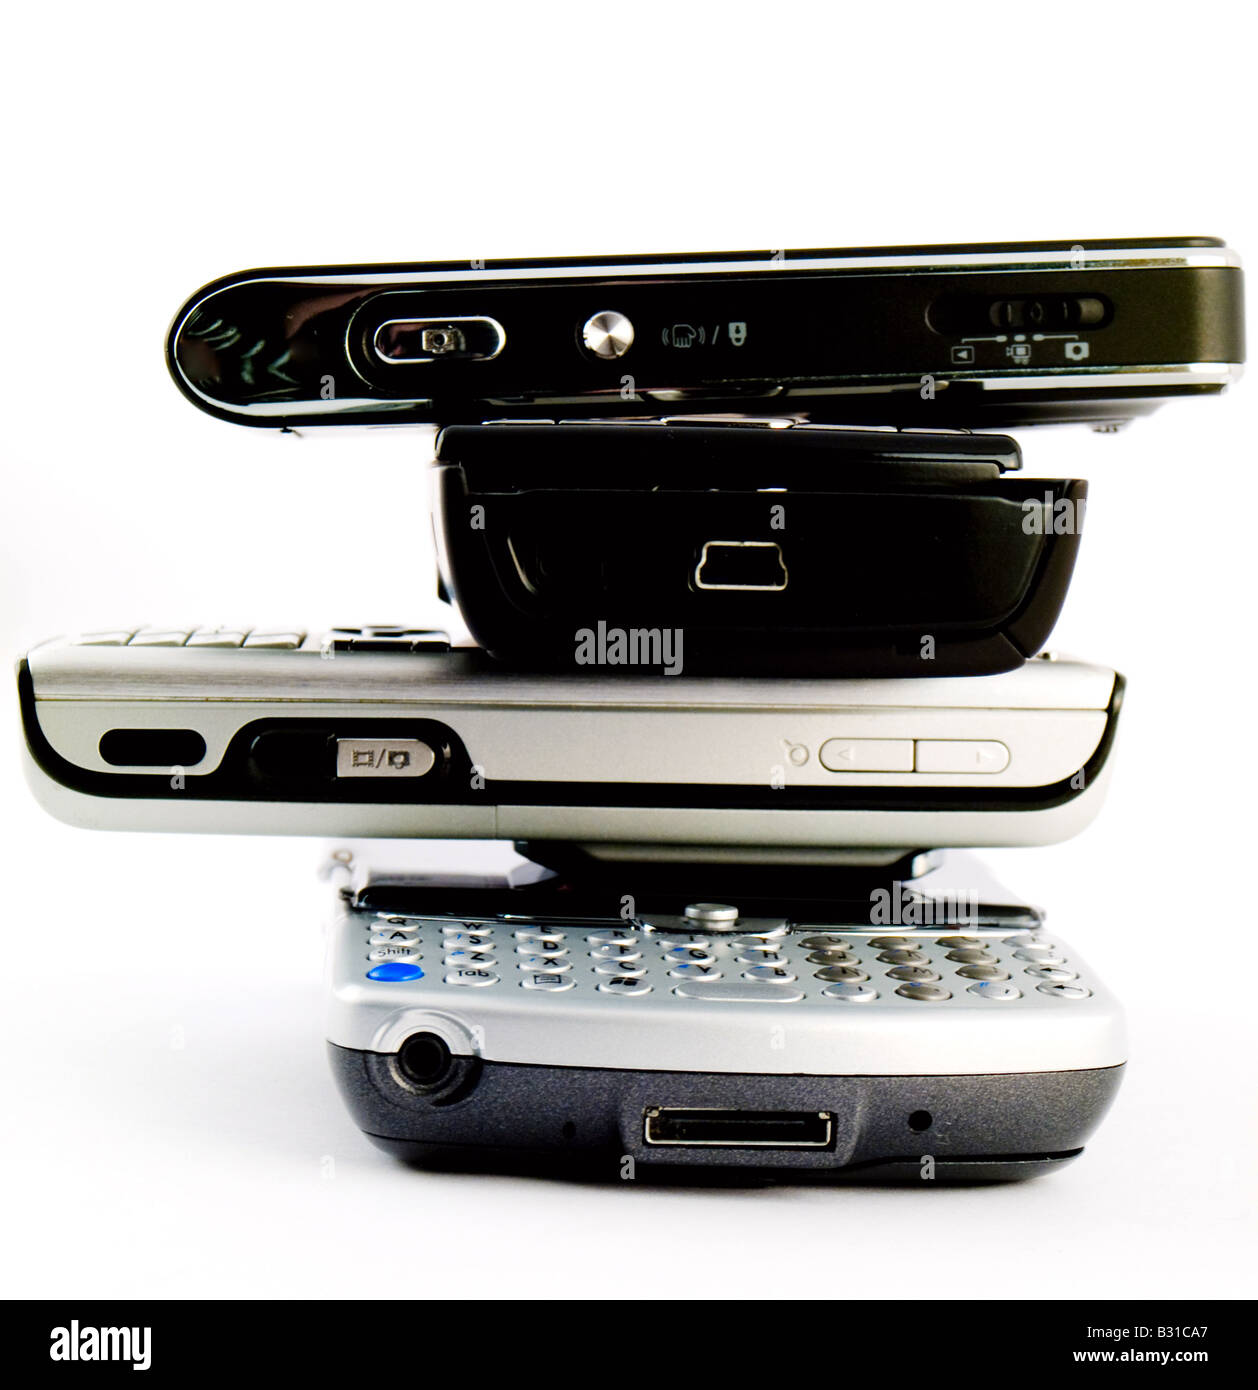 Pila pila di numerosi moderni telefoni cellulari delle cellule di PDA Palmari isolati su sfondo bianco Foto Stock